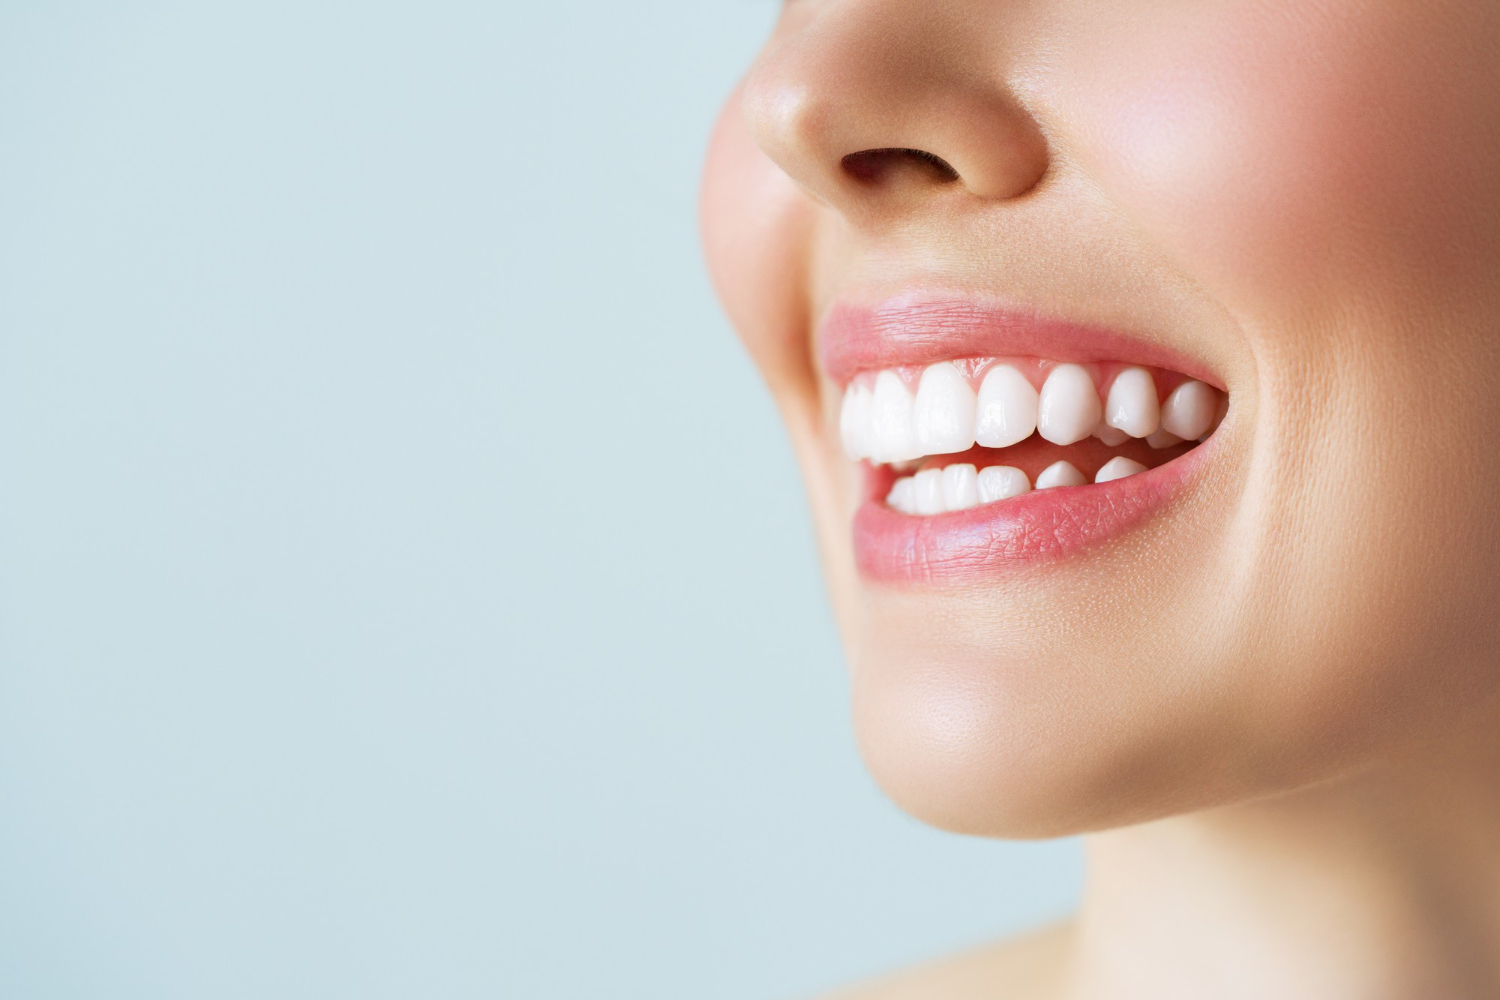 Amedent - Clínica Dental en Valencia|Disfruta de una sonrisa radiante este verano con Amedent: Blanqueamiento dental